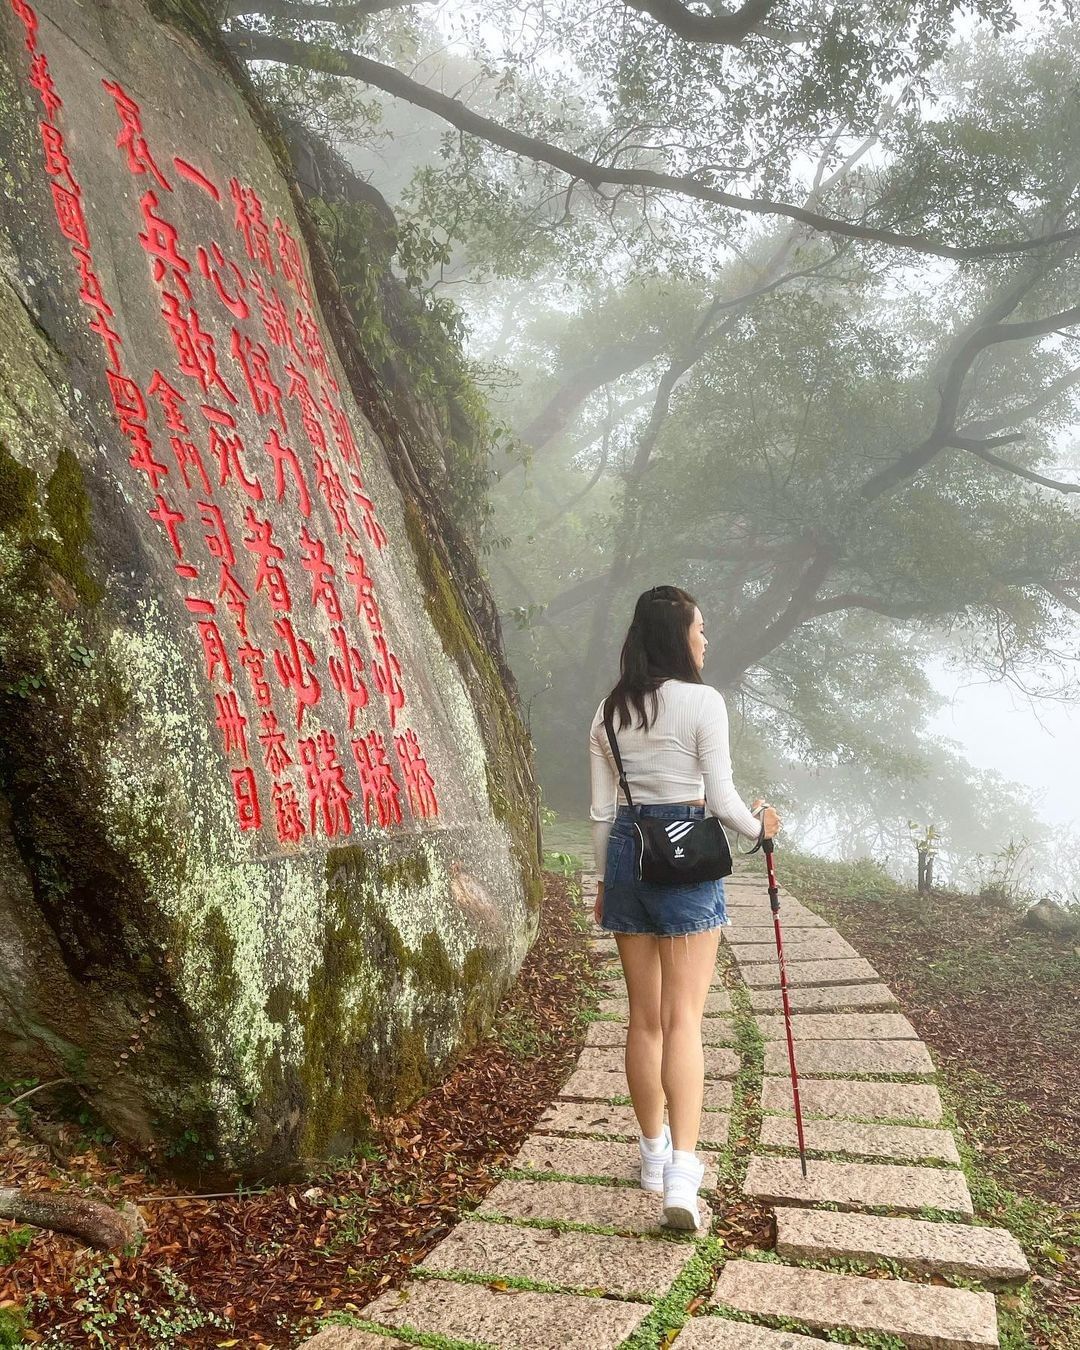 太武山是八二三炮戰重要紀念地，除了可以登高望遠、健行外，山上更充滿人文景觀
-
感謝  @ariel_chia 美圖分享
-
在你...